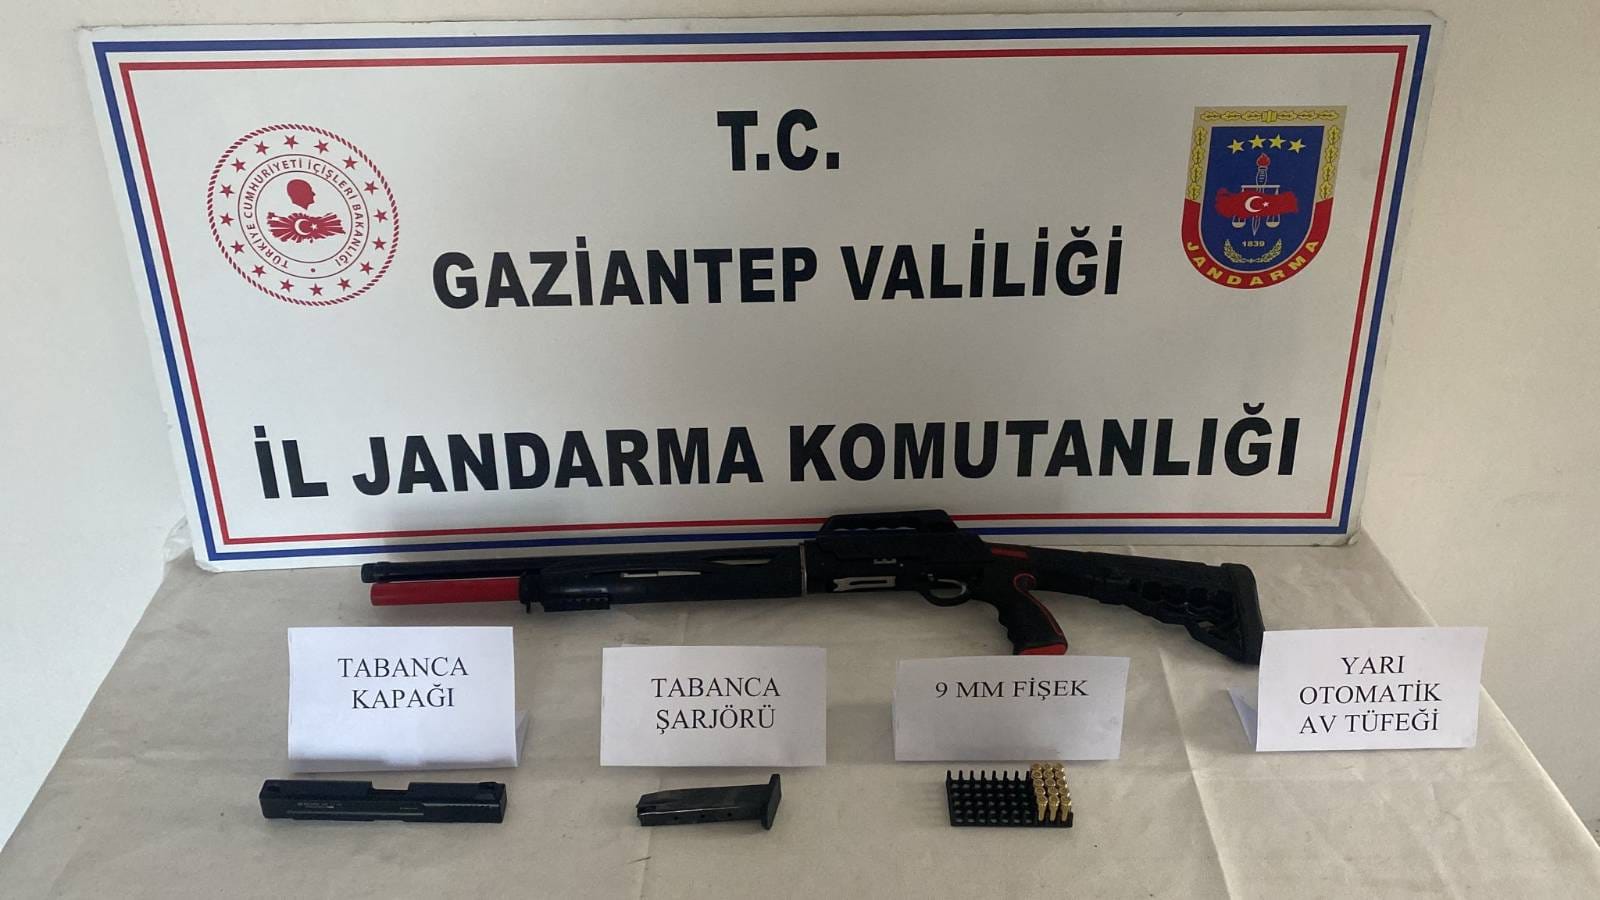 Gaziantep’te Silah Kaçakçılarına Büyük Darbe Onlarca Silah Ele Geçirildi (2)